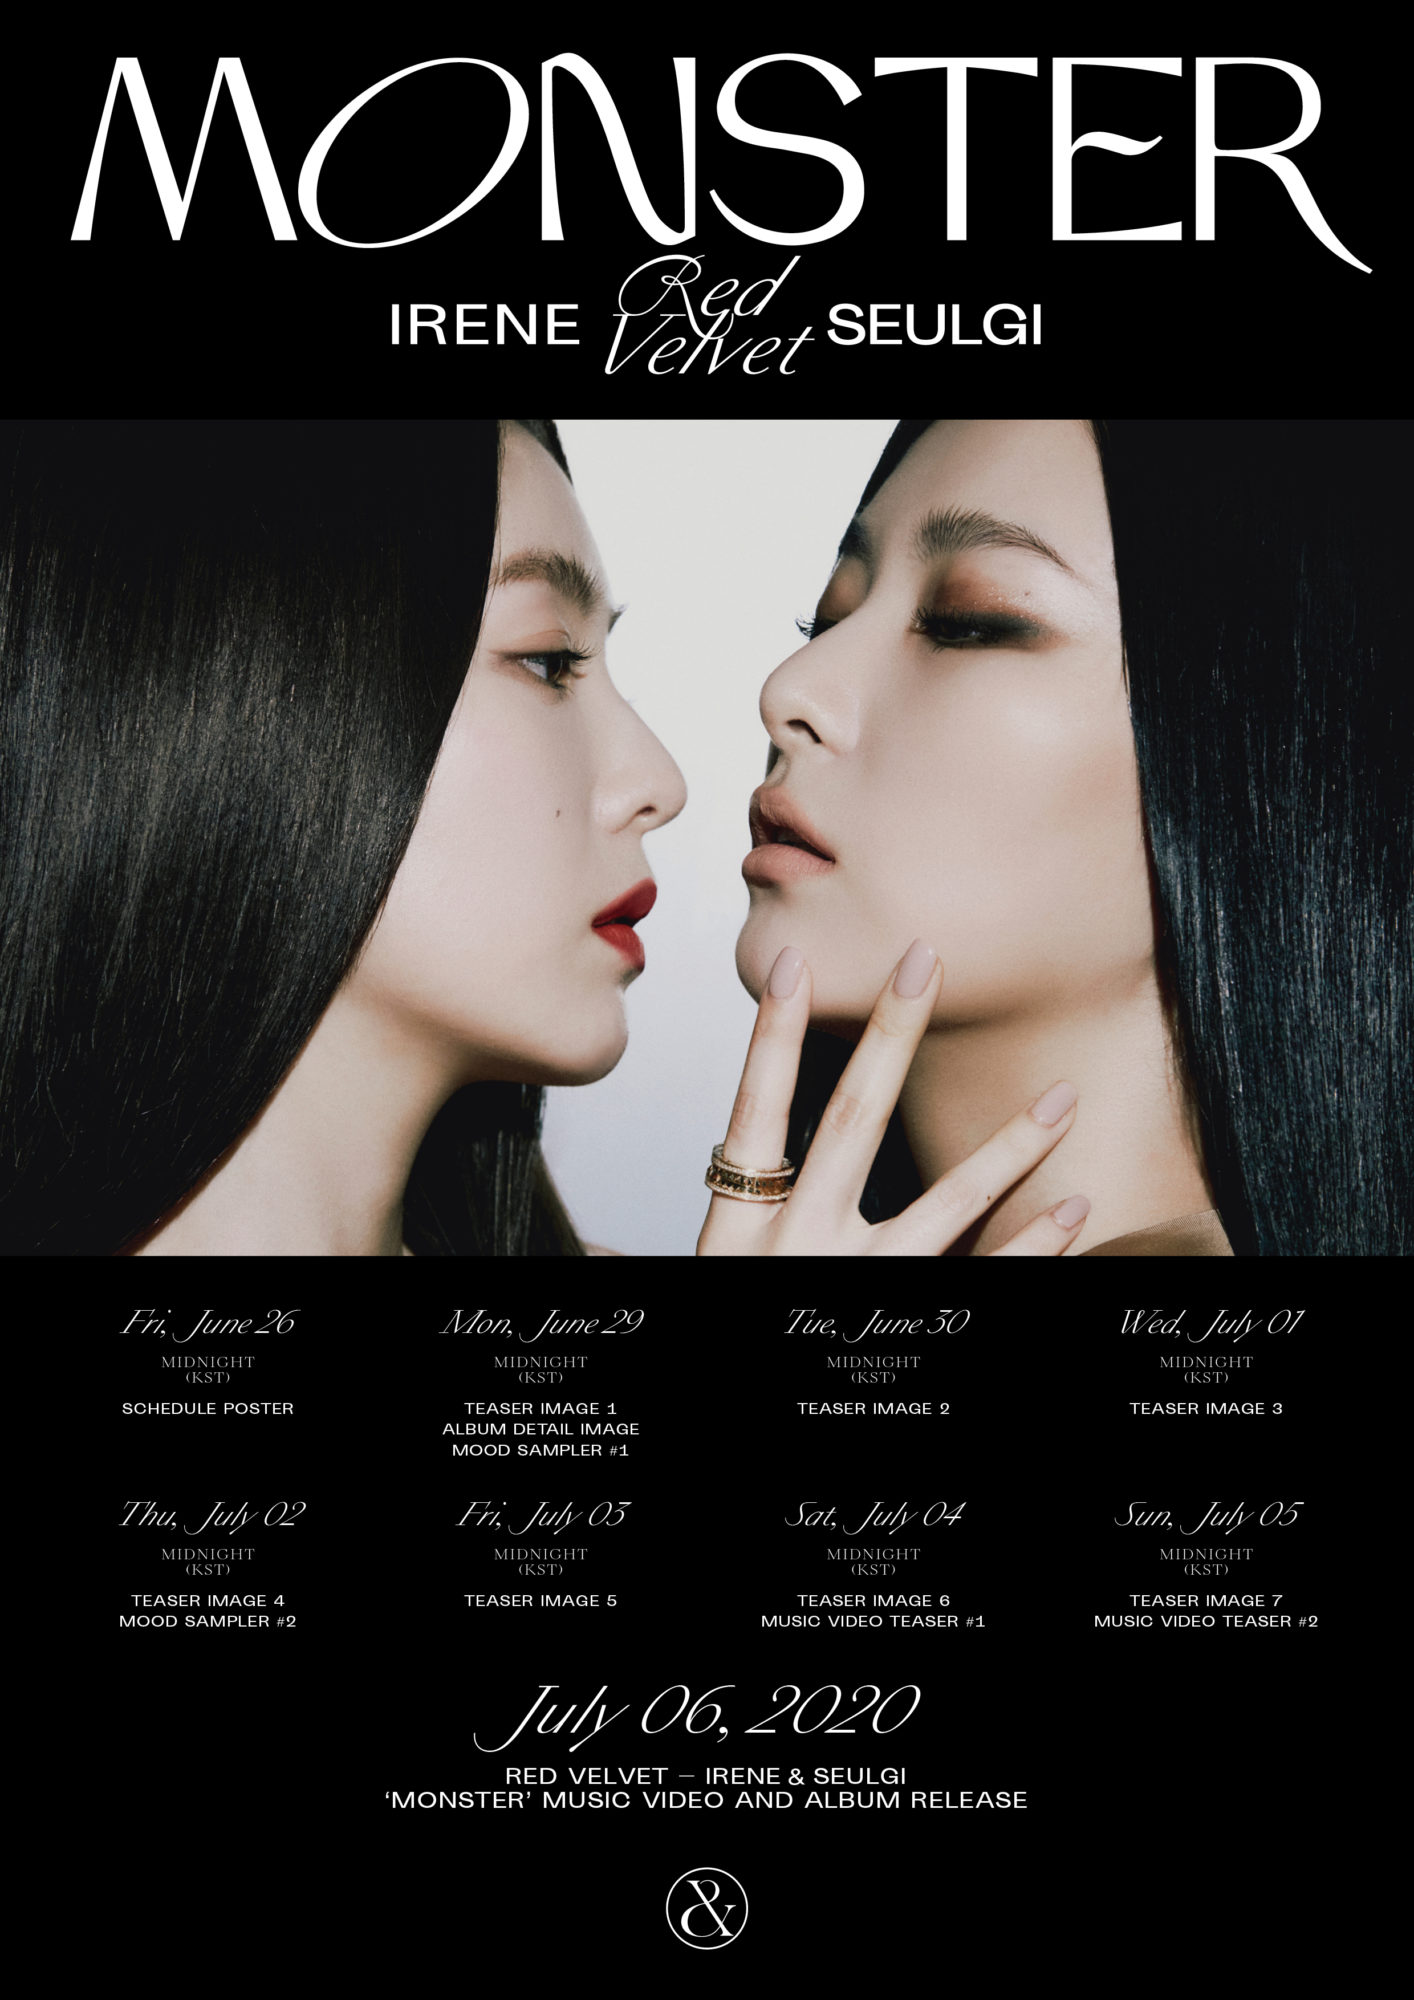 Red Velvet Irene & Seulgi Monster Schedule